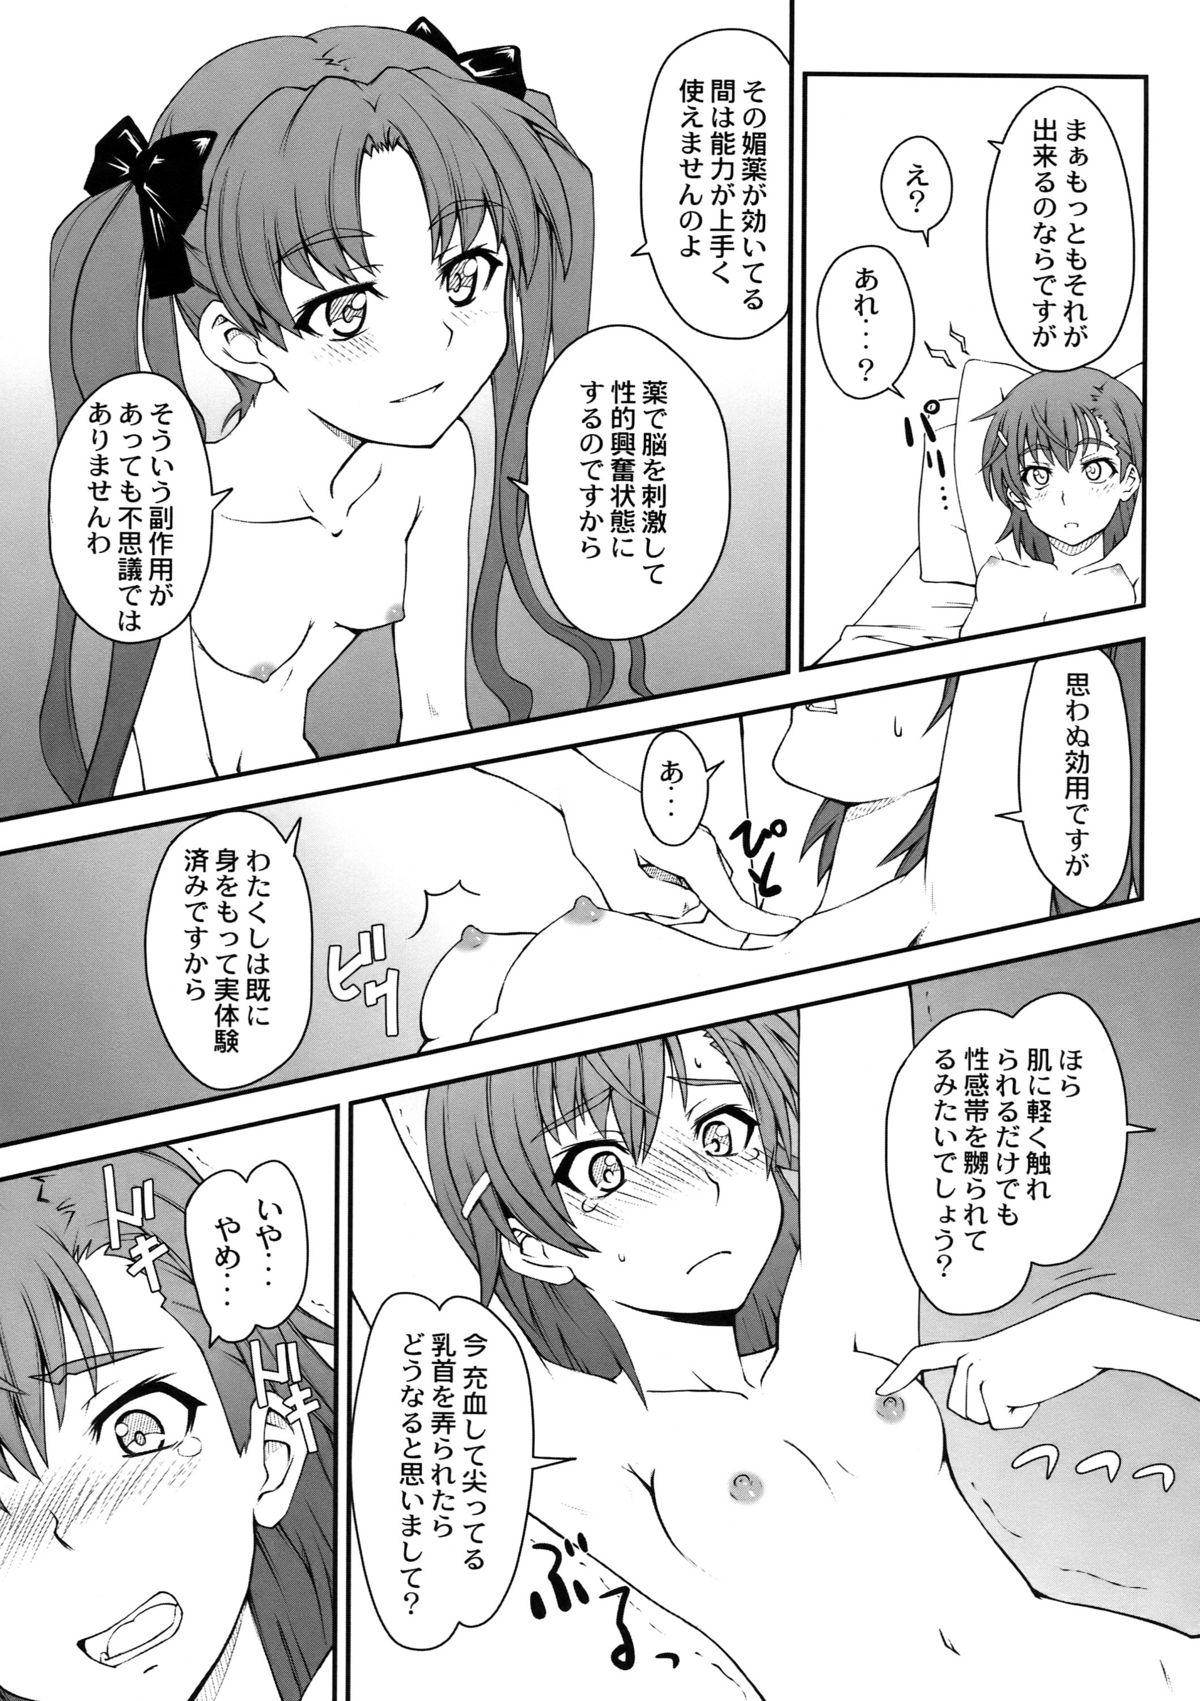 Gay Fucking Onnanoko Doushi toka Suki dakara! 2 - Toaru kagaku no railgun Abg - Page 11